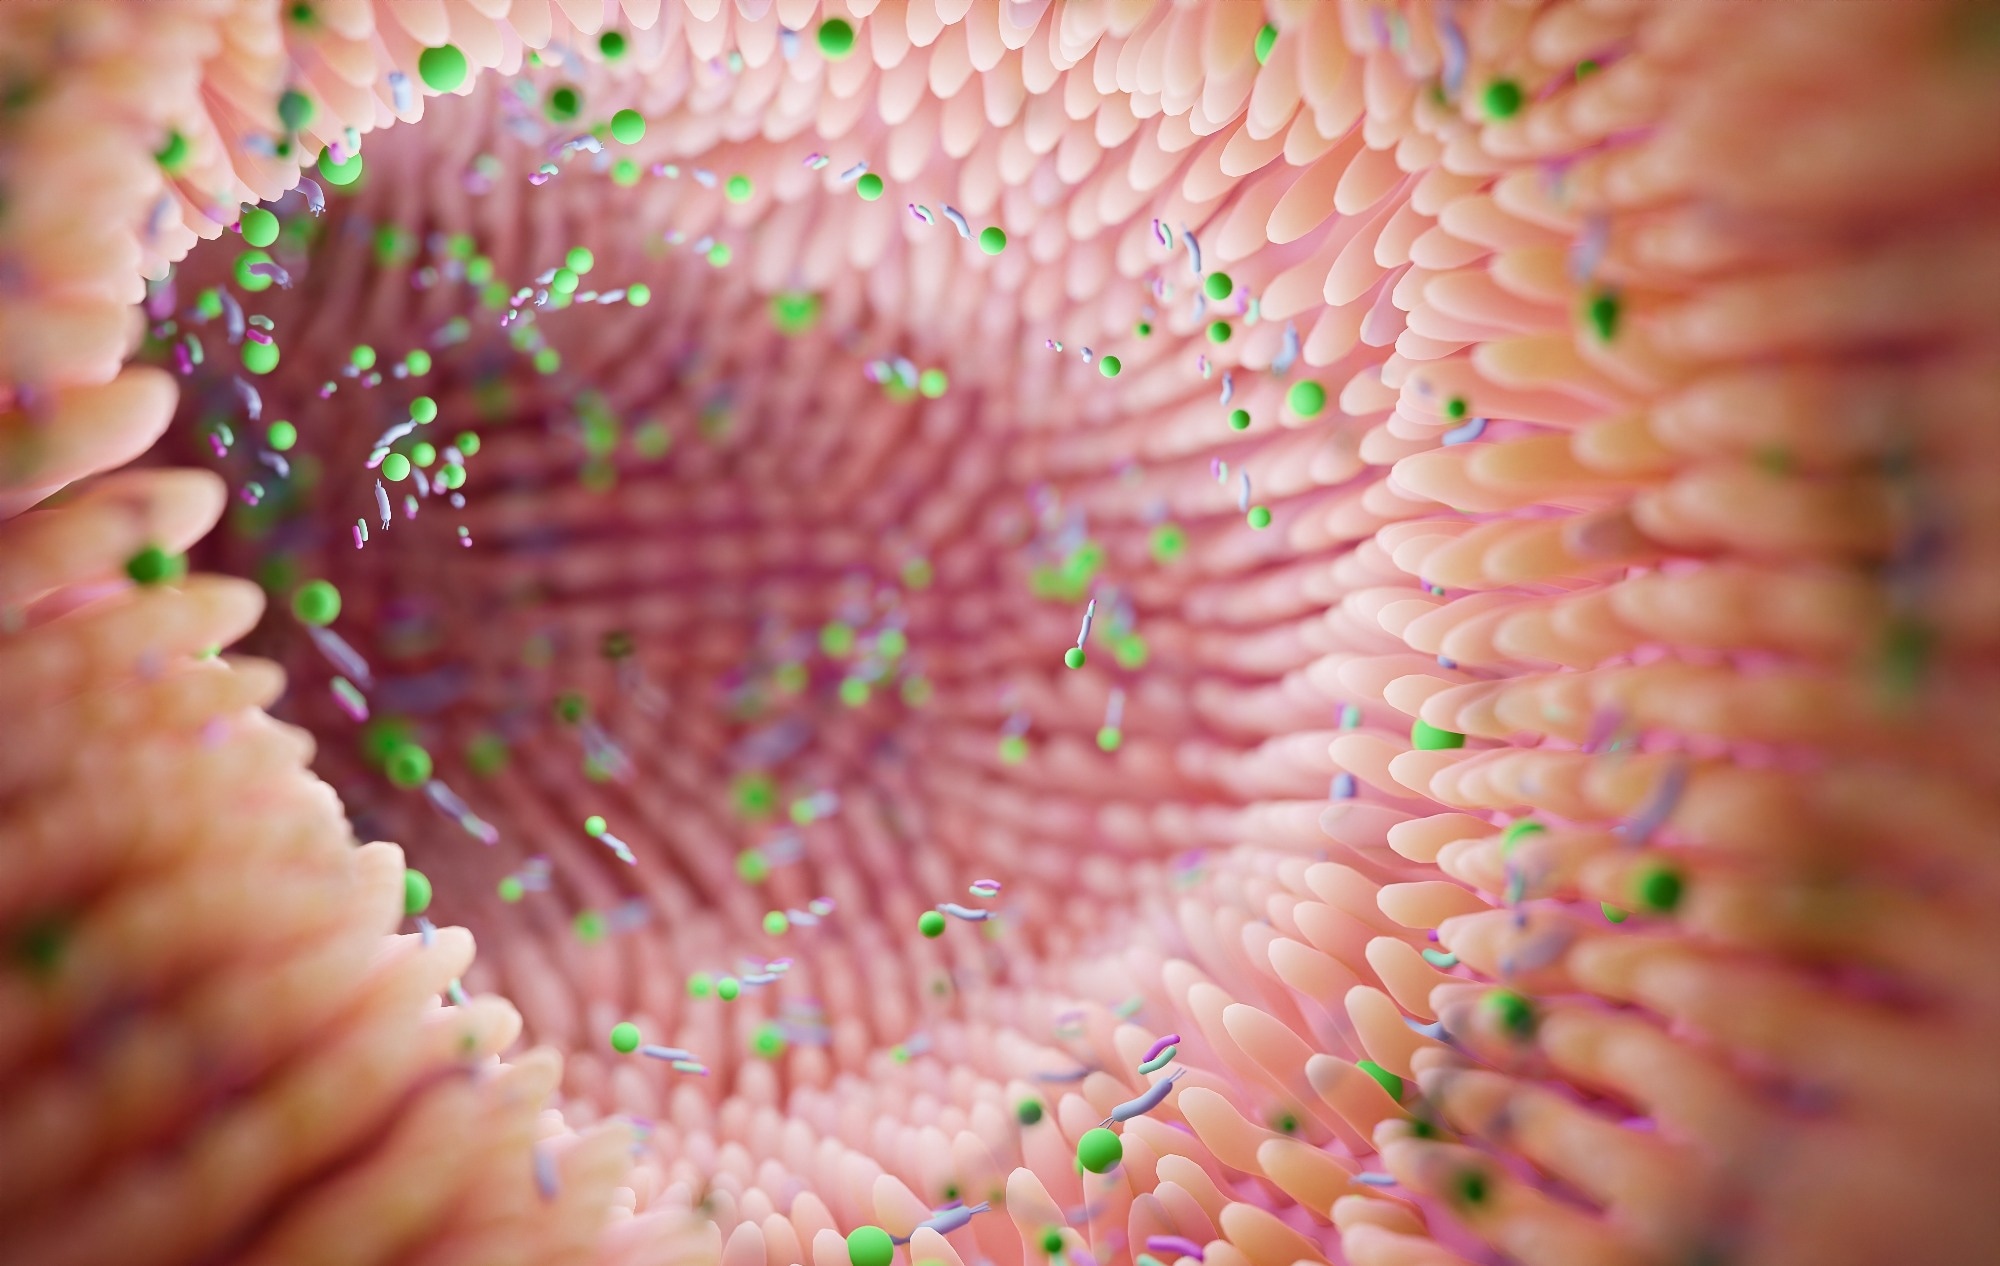 Étude : Associations environnementales et génétiques avec une maturation microbienne intestinale anormale dans l'asthme infantile.  Crédit d'image : cheval de Troie/Shutterstock